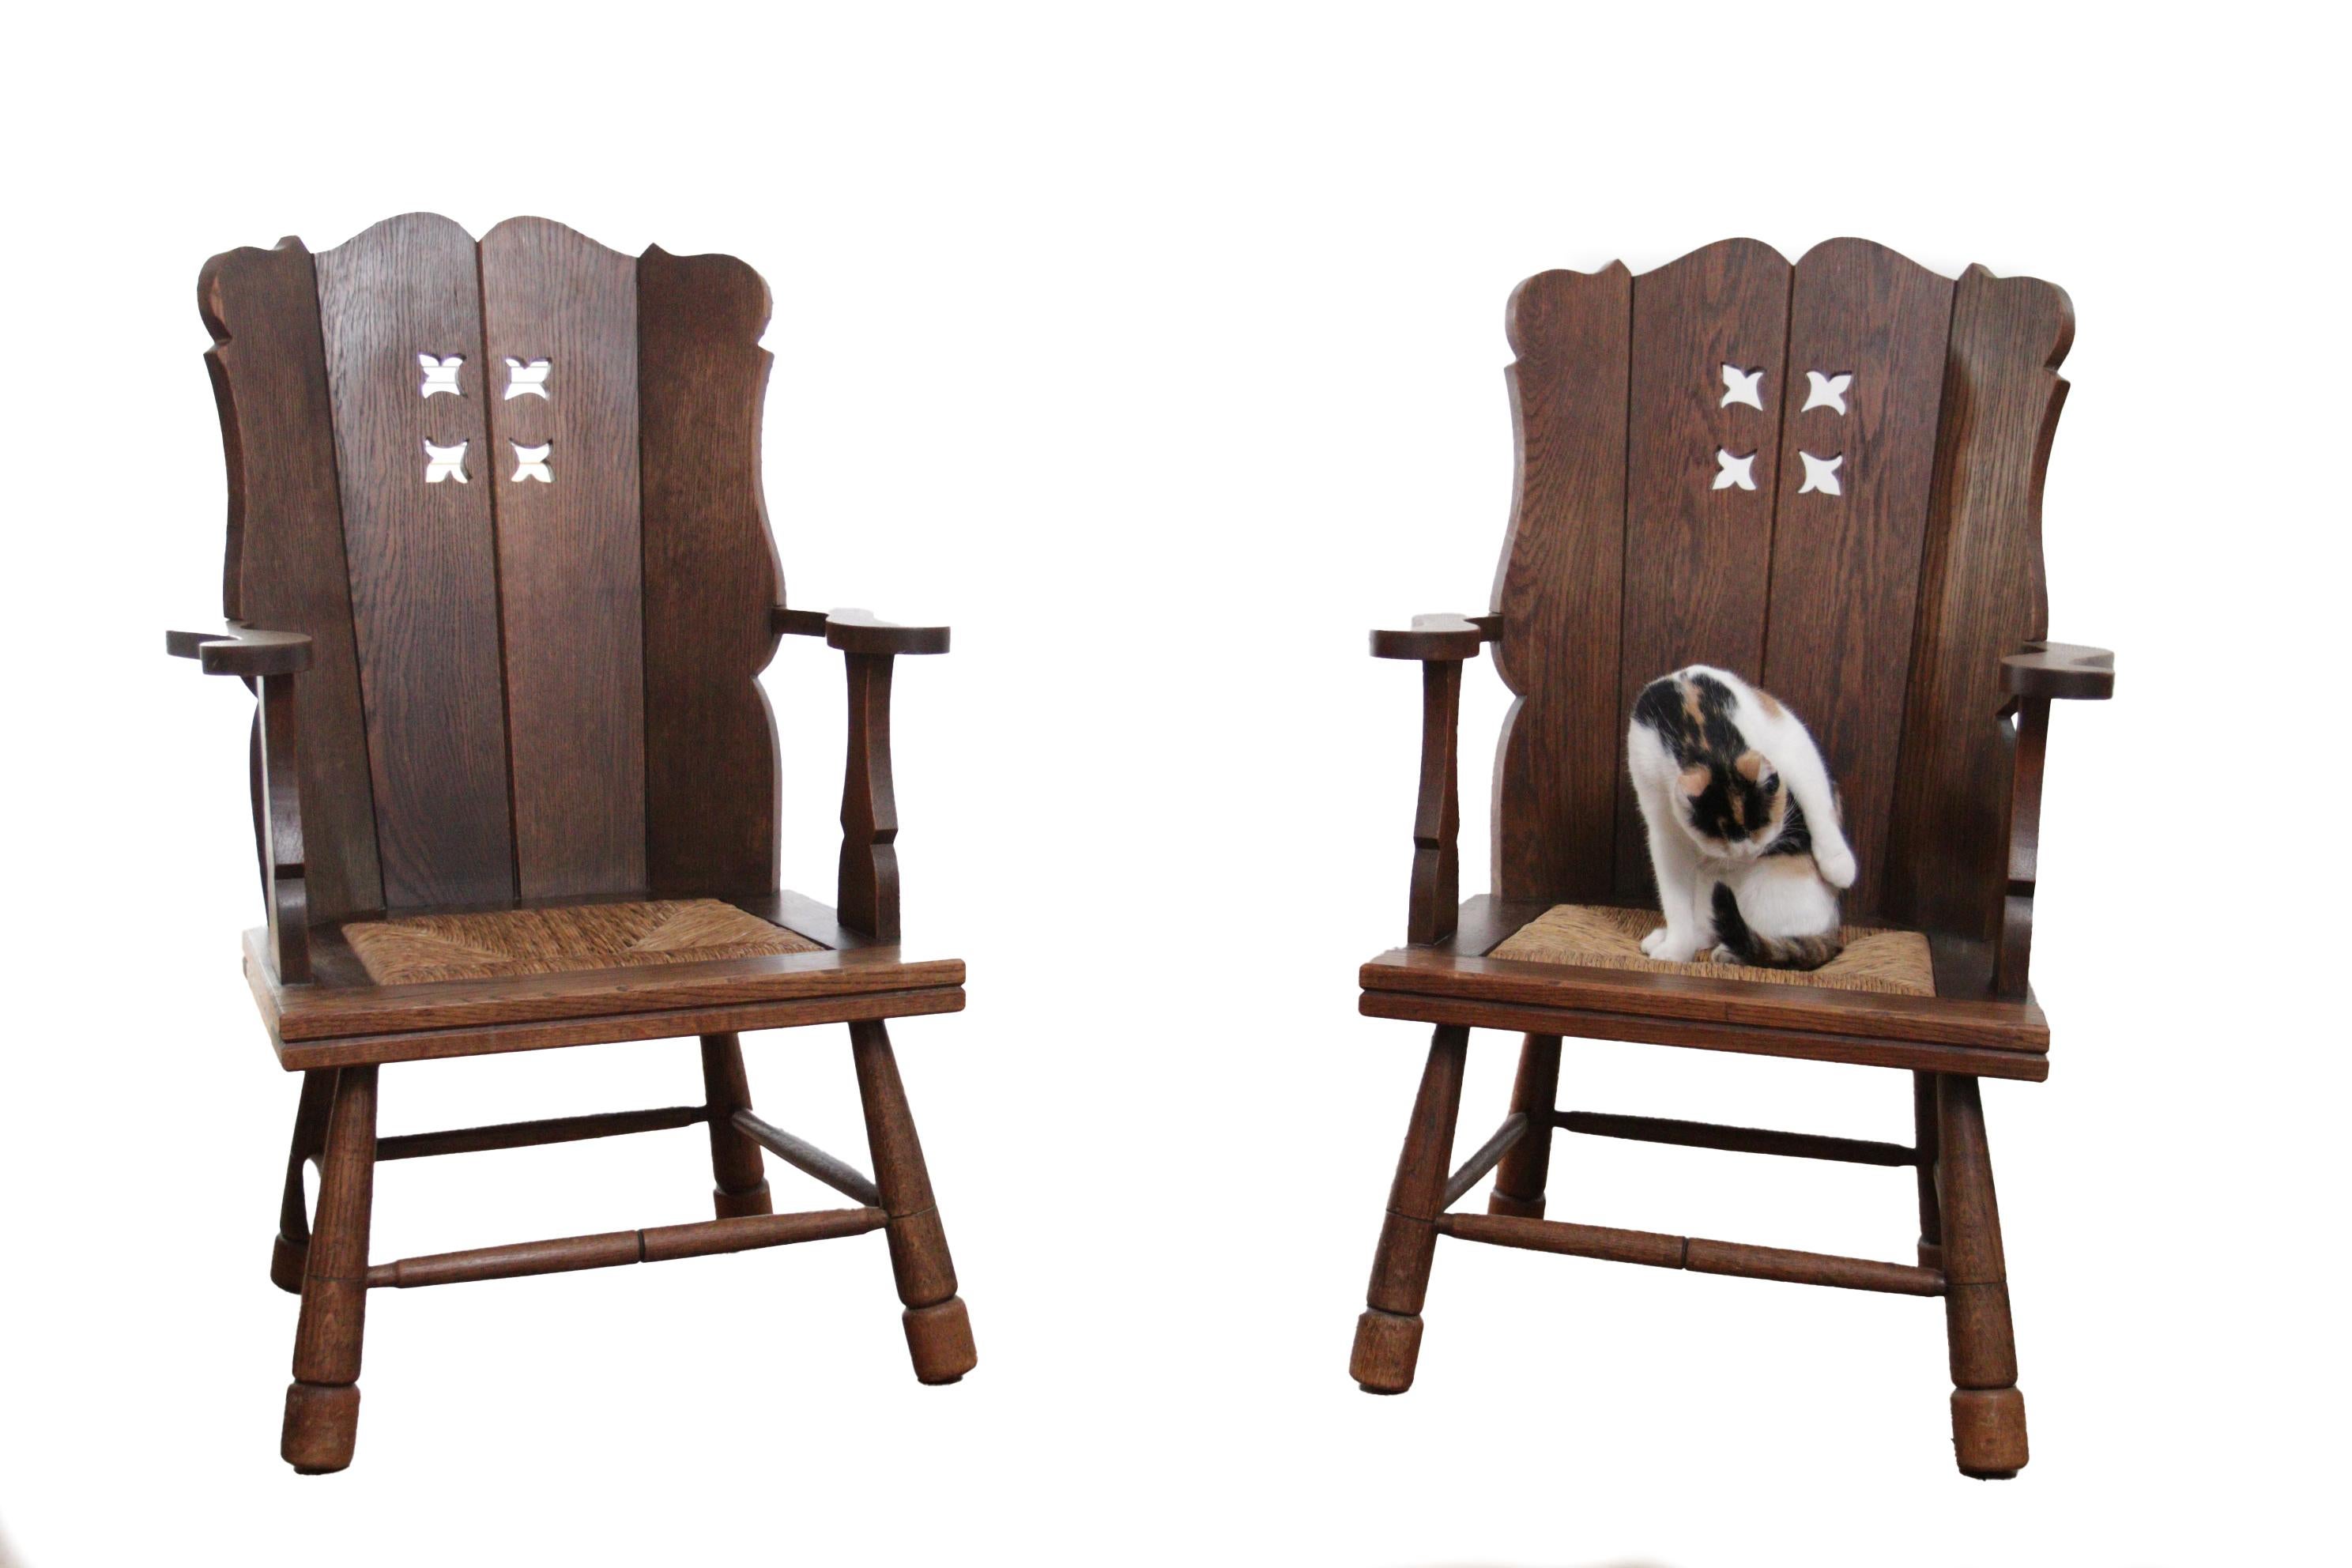 Deux belles chaises en chêne massif avec une assise en jonc des années 1930.
S'intègre parfaitement au style de designers tels que Henning Kjærnulf, Axel Einar Hjorth, Charlotte Perriand, Jean Touret et Charles Dudouyt.
Les chaises sont confortables